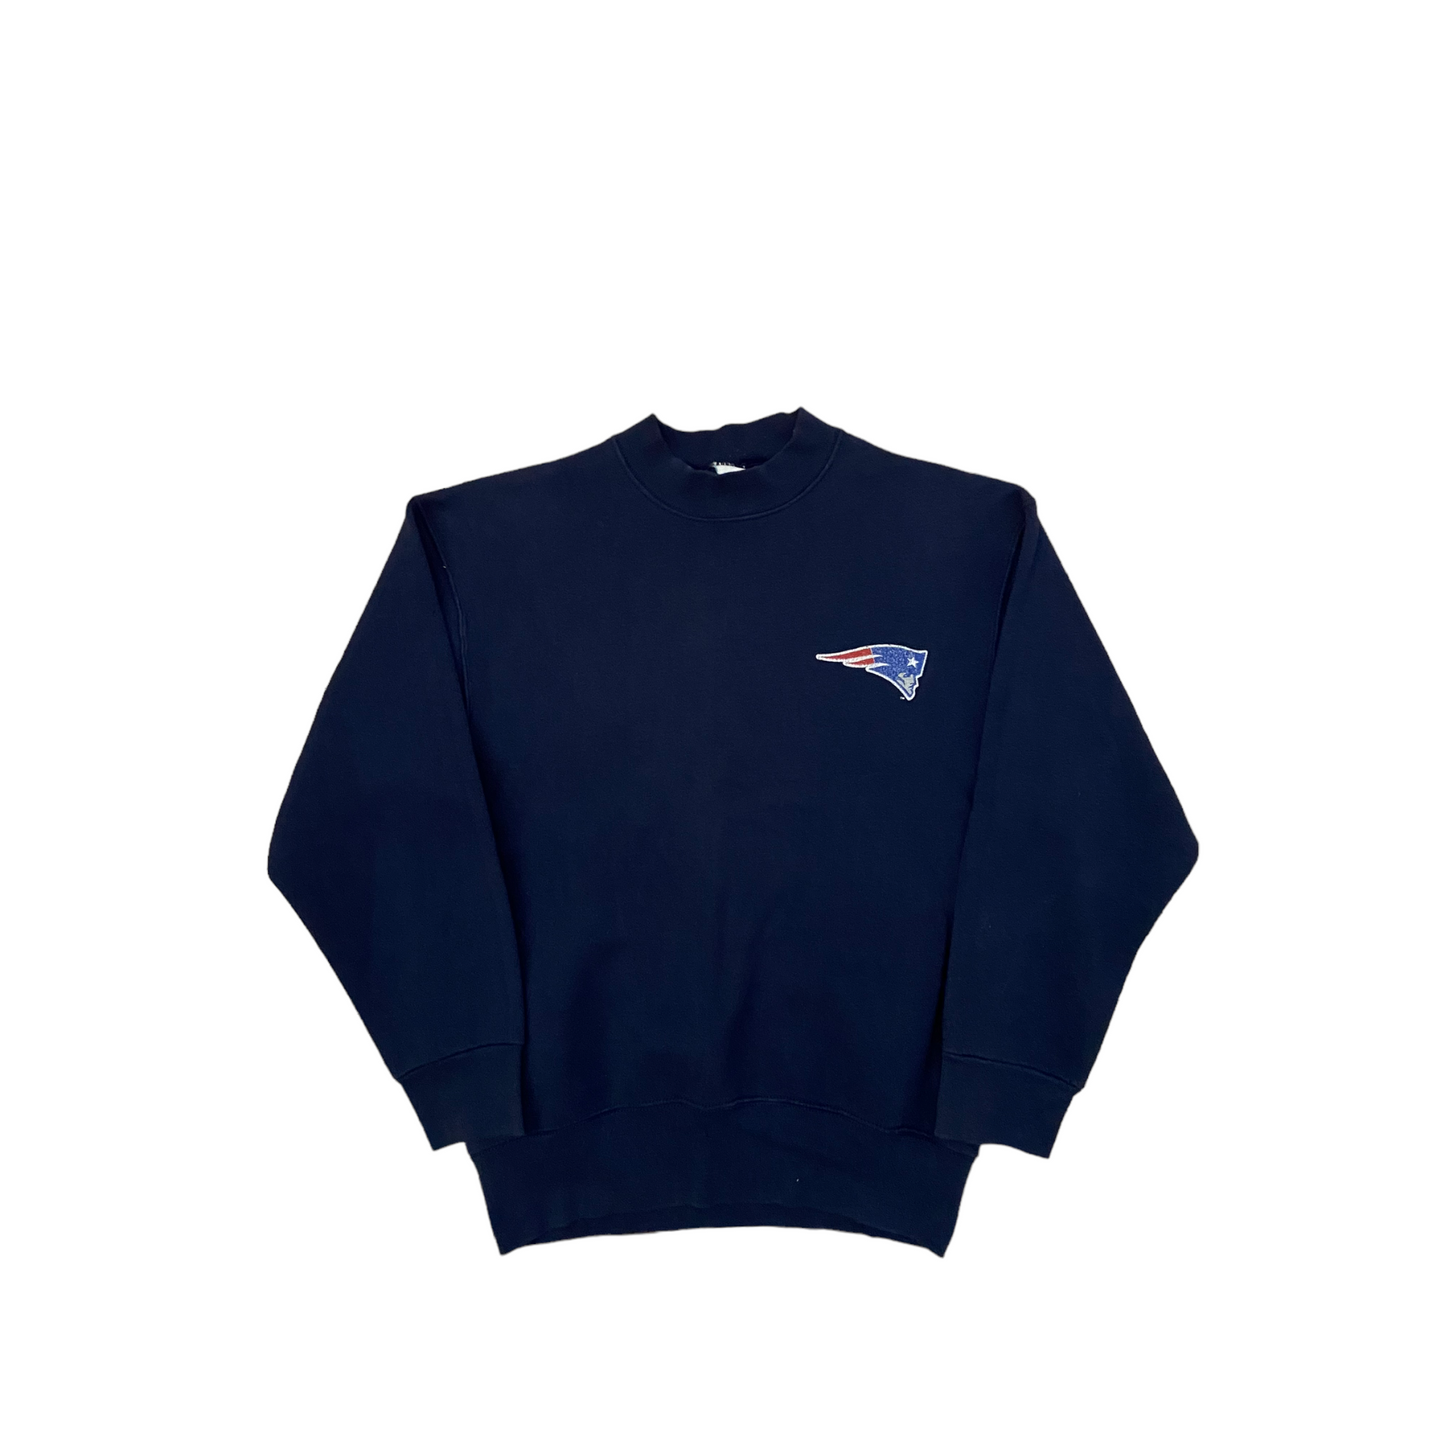 Patriots 1995 sweatshirt S/M